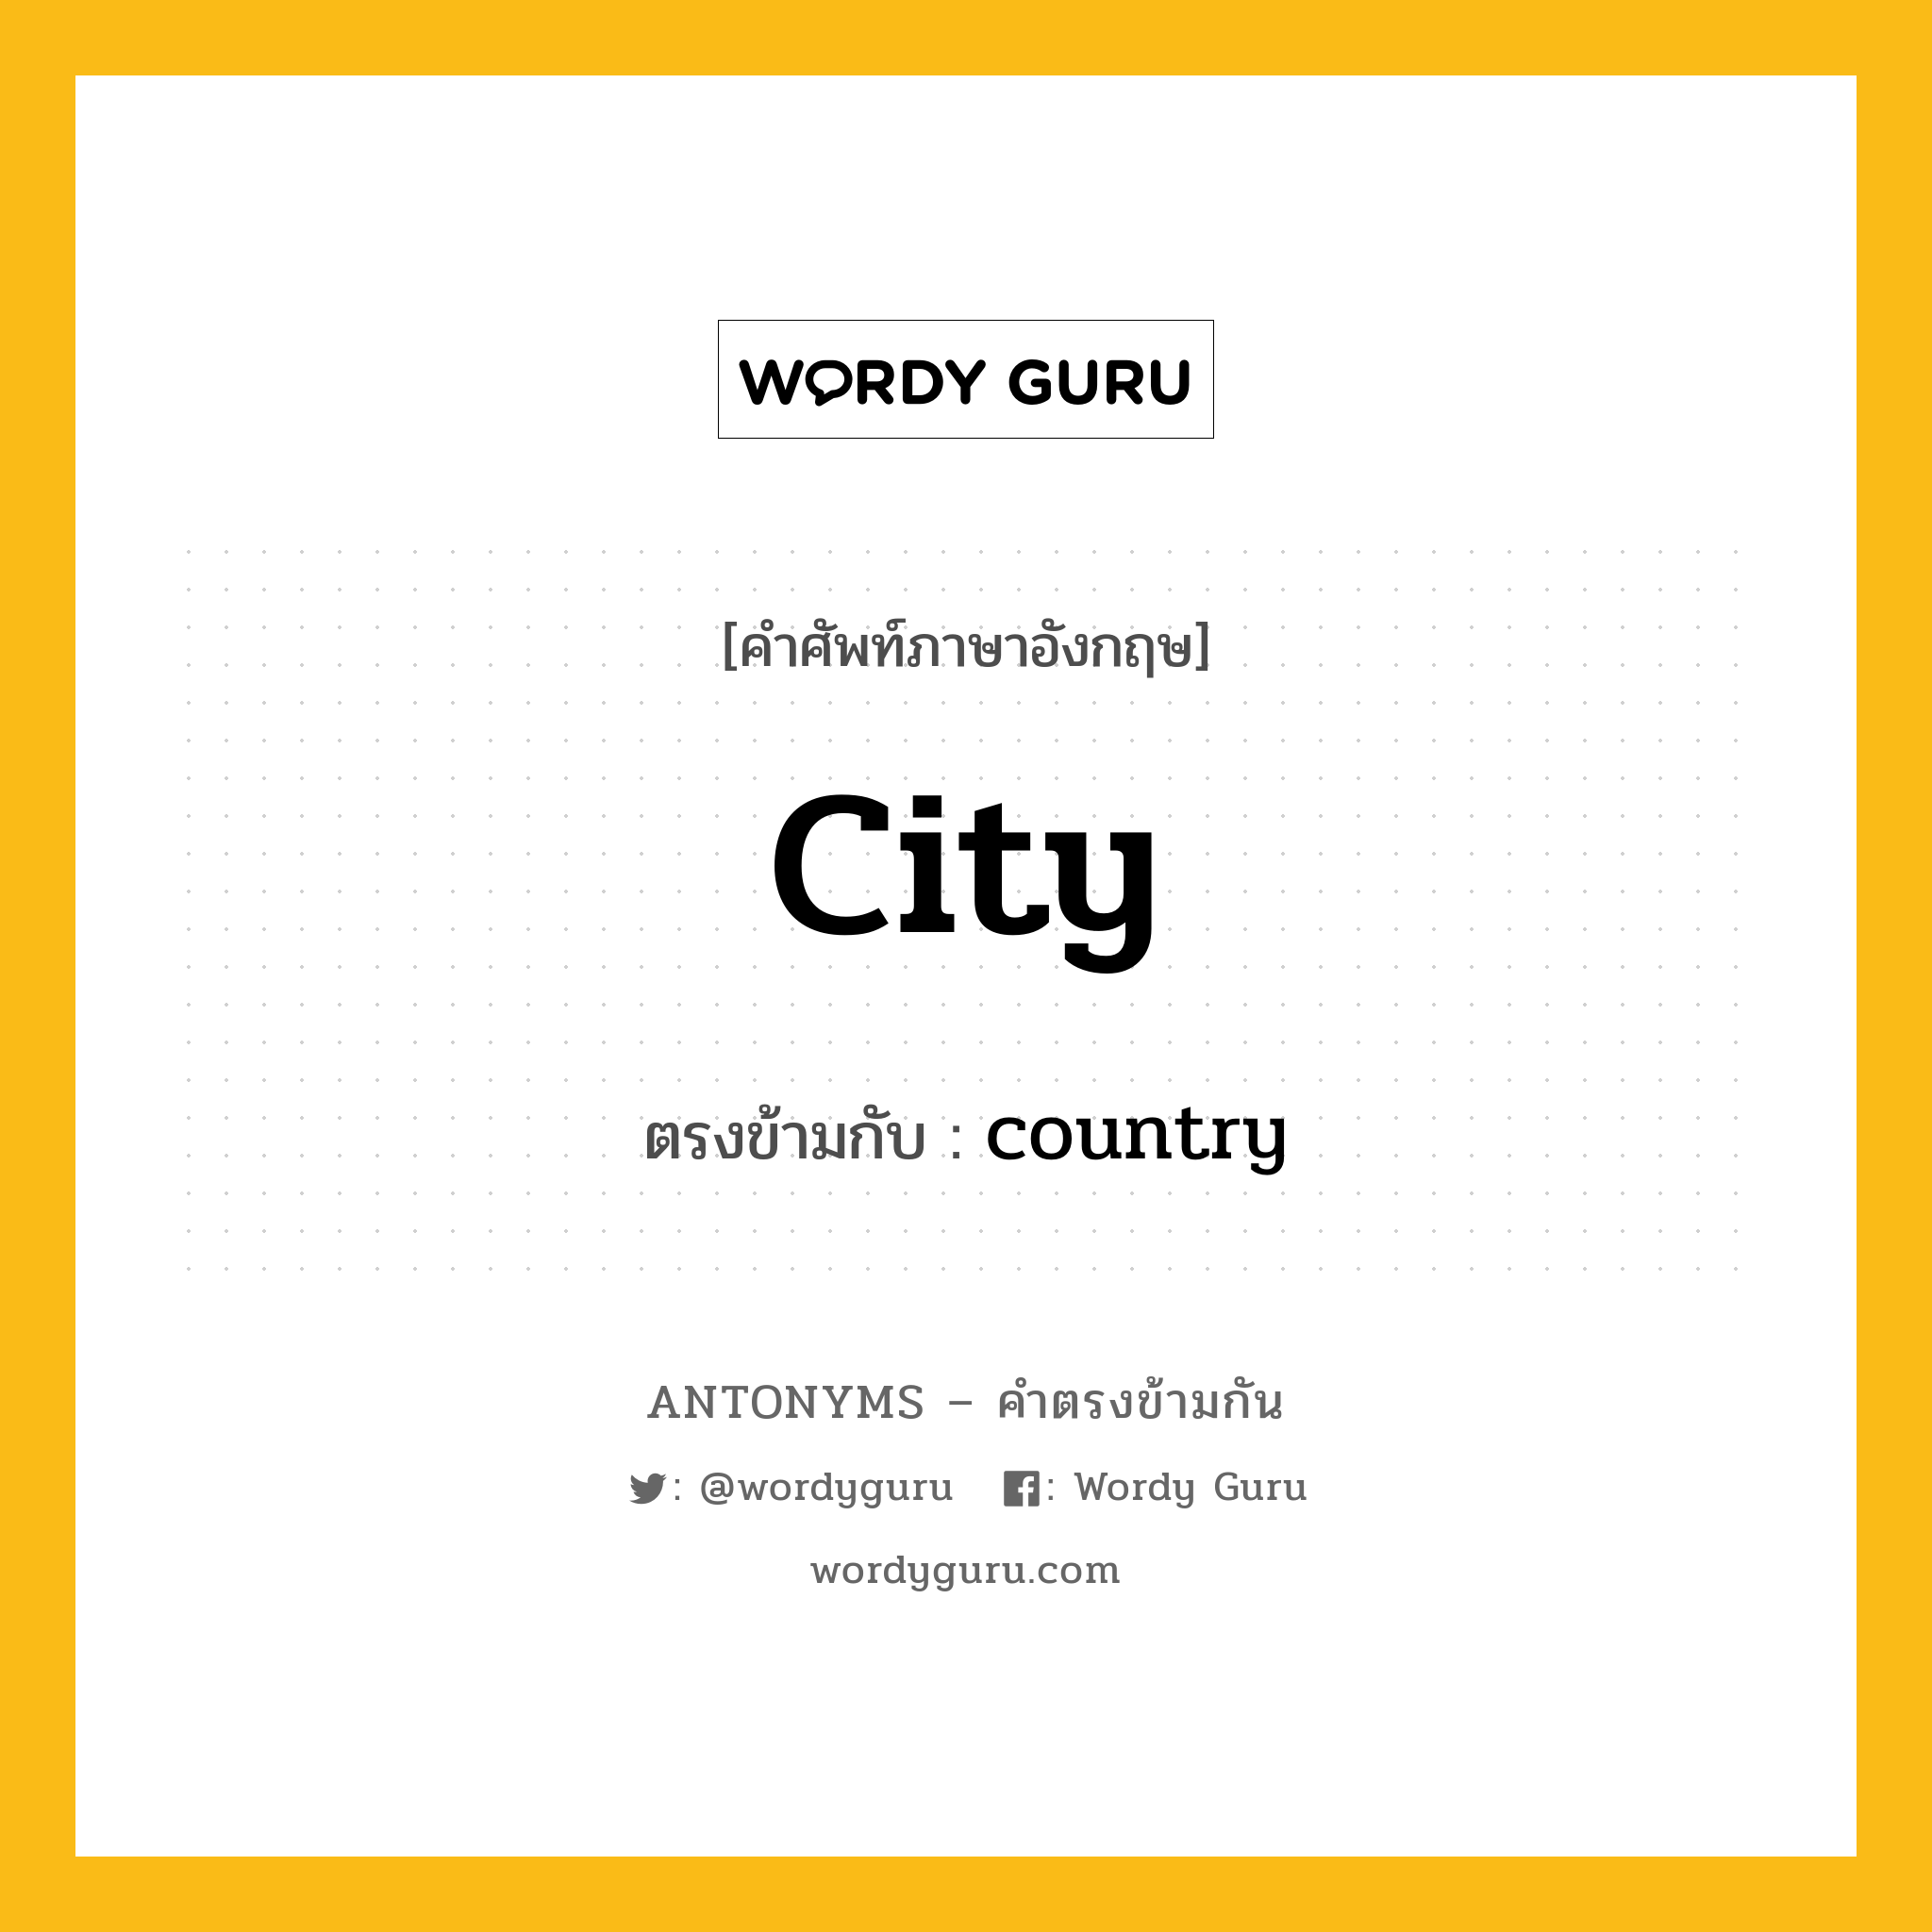 city เป็นคำตรงข้ามกับคำไหนบ้าง?, คำศัพท์ภาษาอังกฤษ city ตรงข้ามกับ country หมวด country